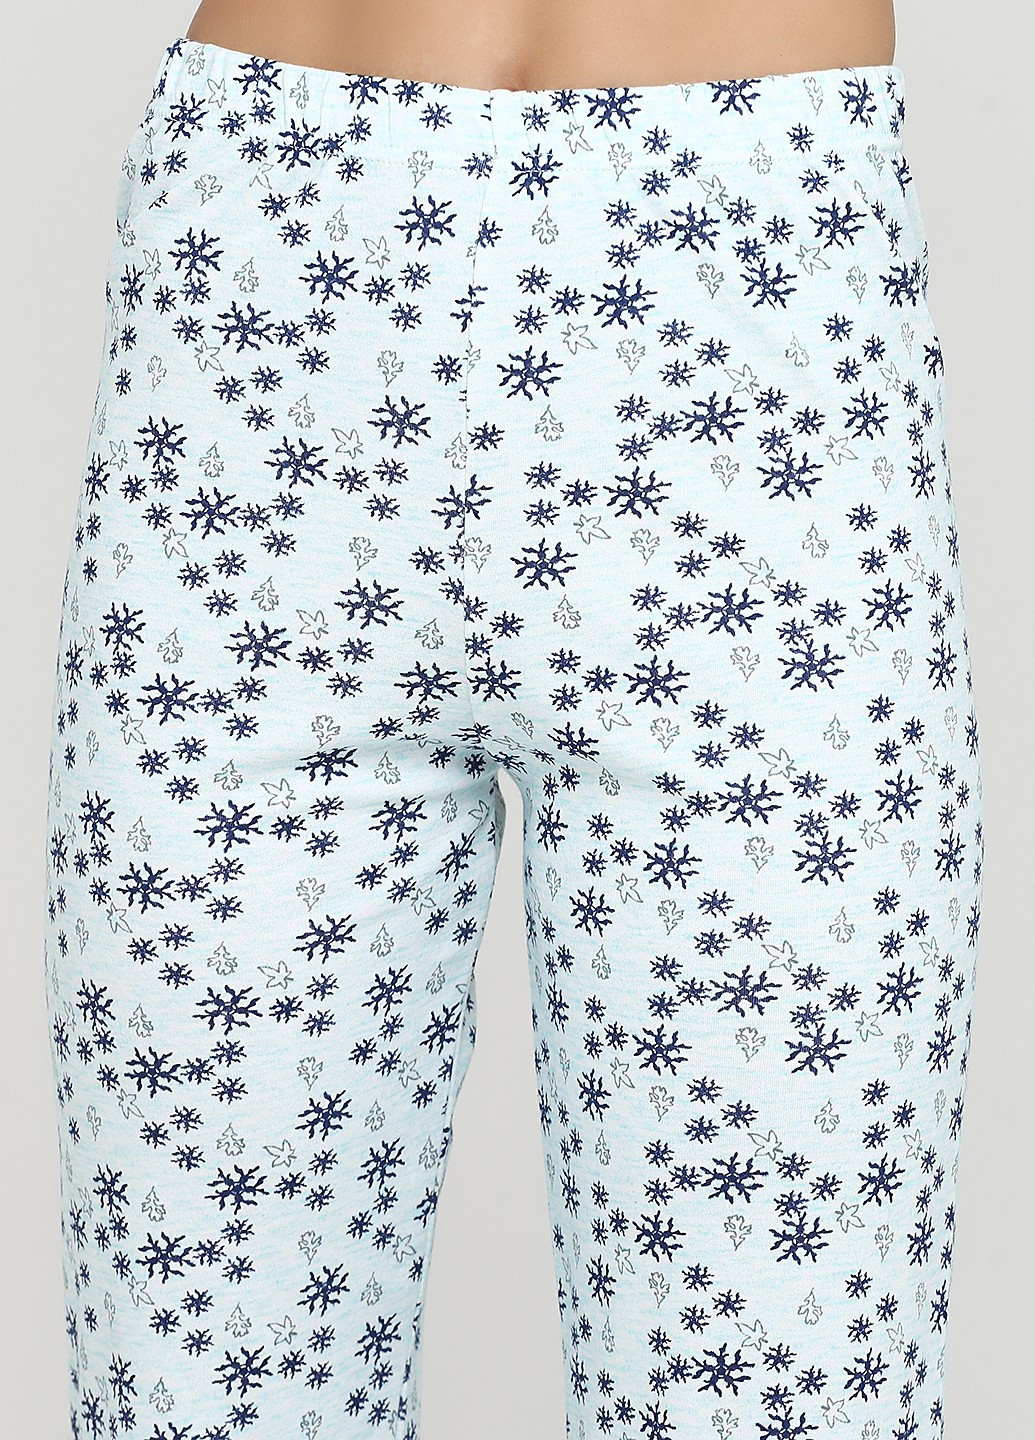 Мятная зимняя комплект плотный трикотаж (свитшот, брюки) Glisa Pijama